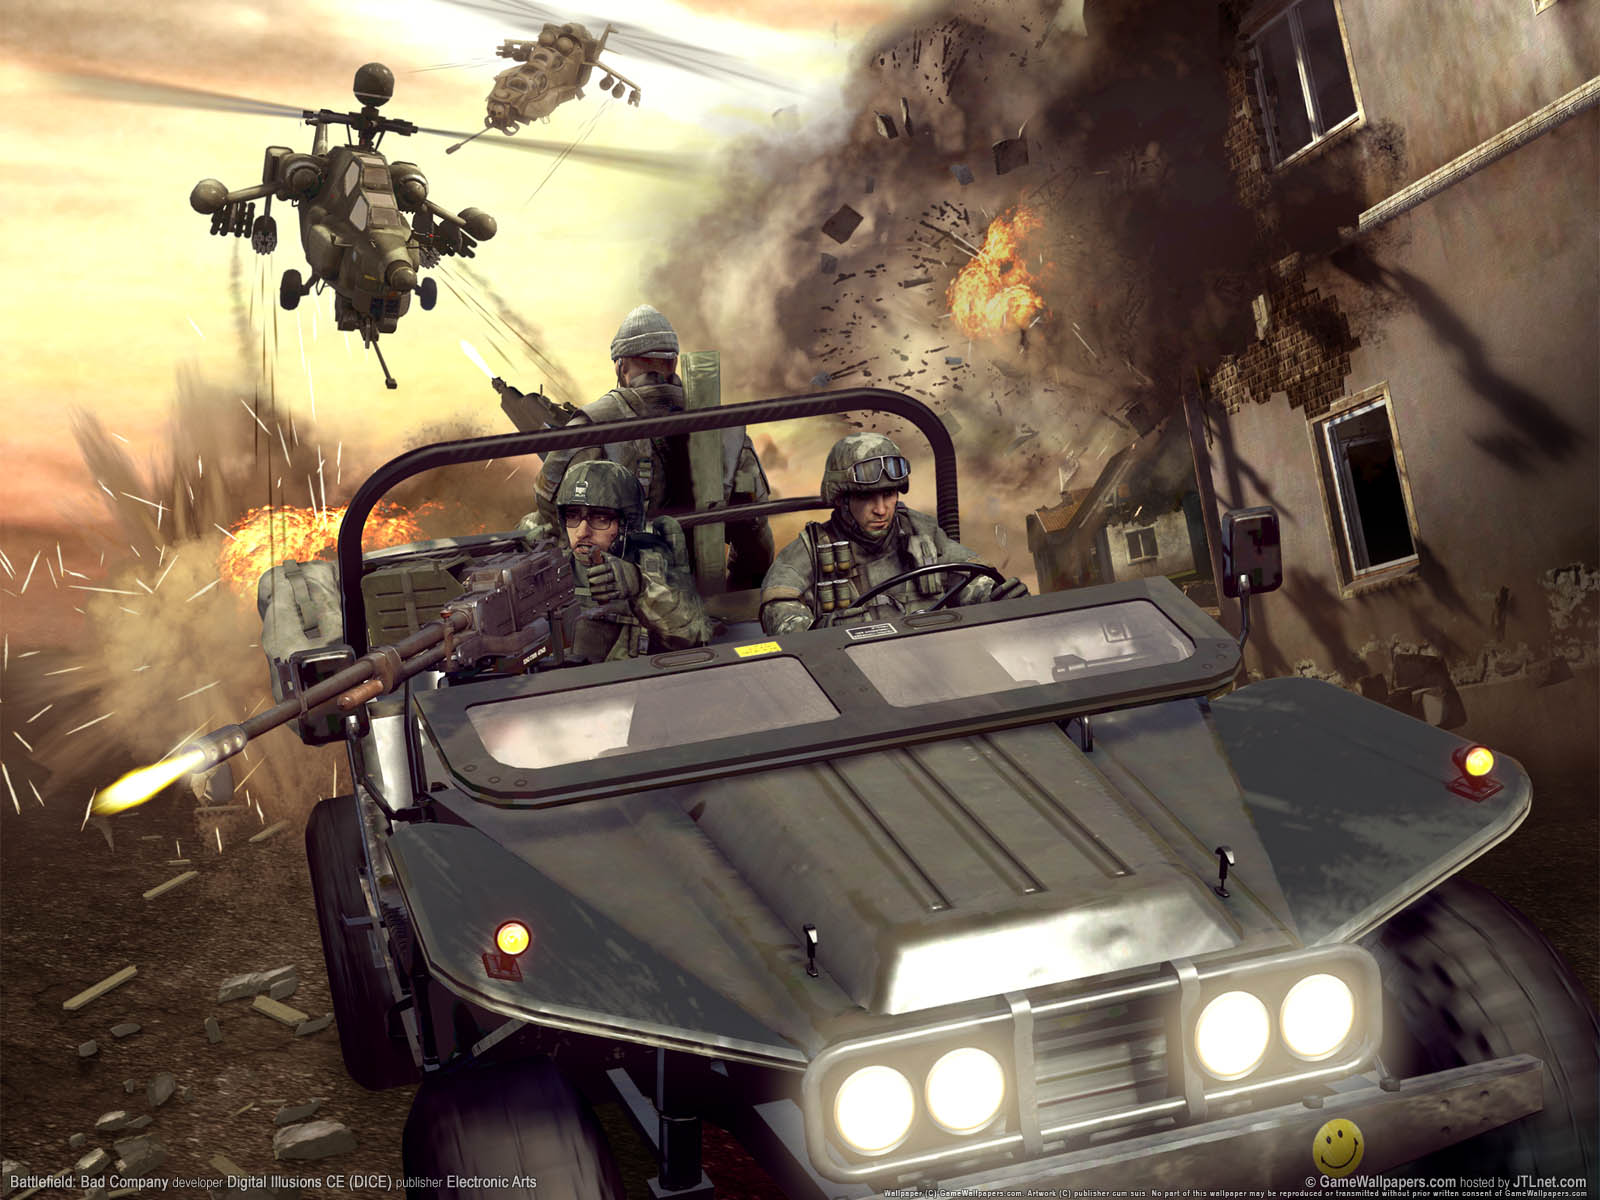 Battlefield%3A Bad Company fond d'cran 01 1600x1200